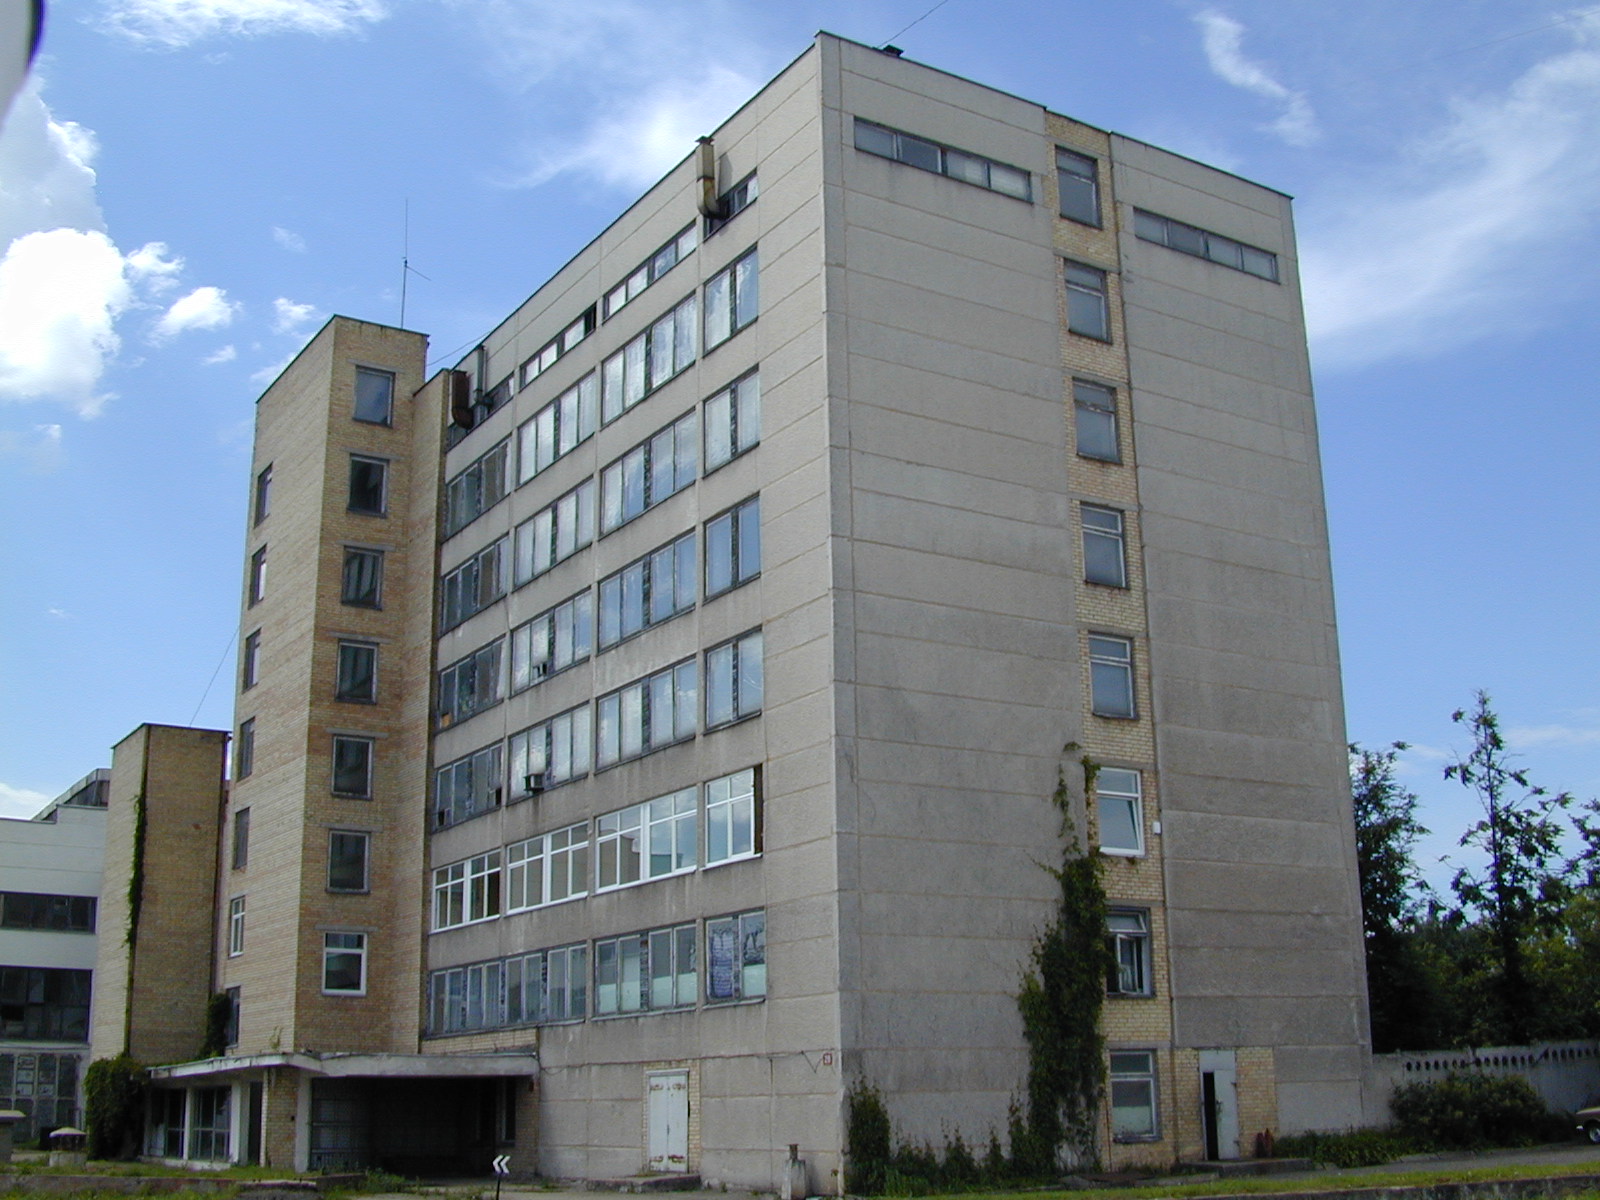 Pramonės g. 97, Vilnius